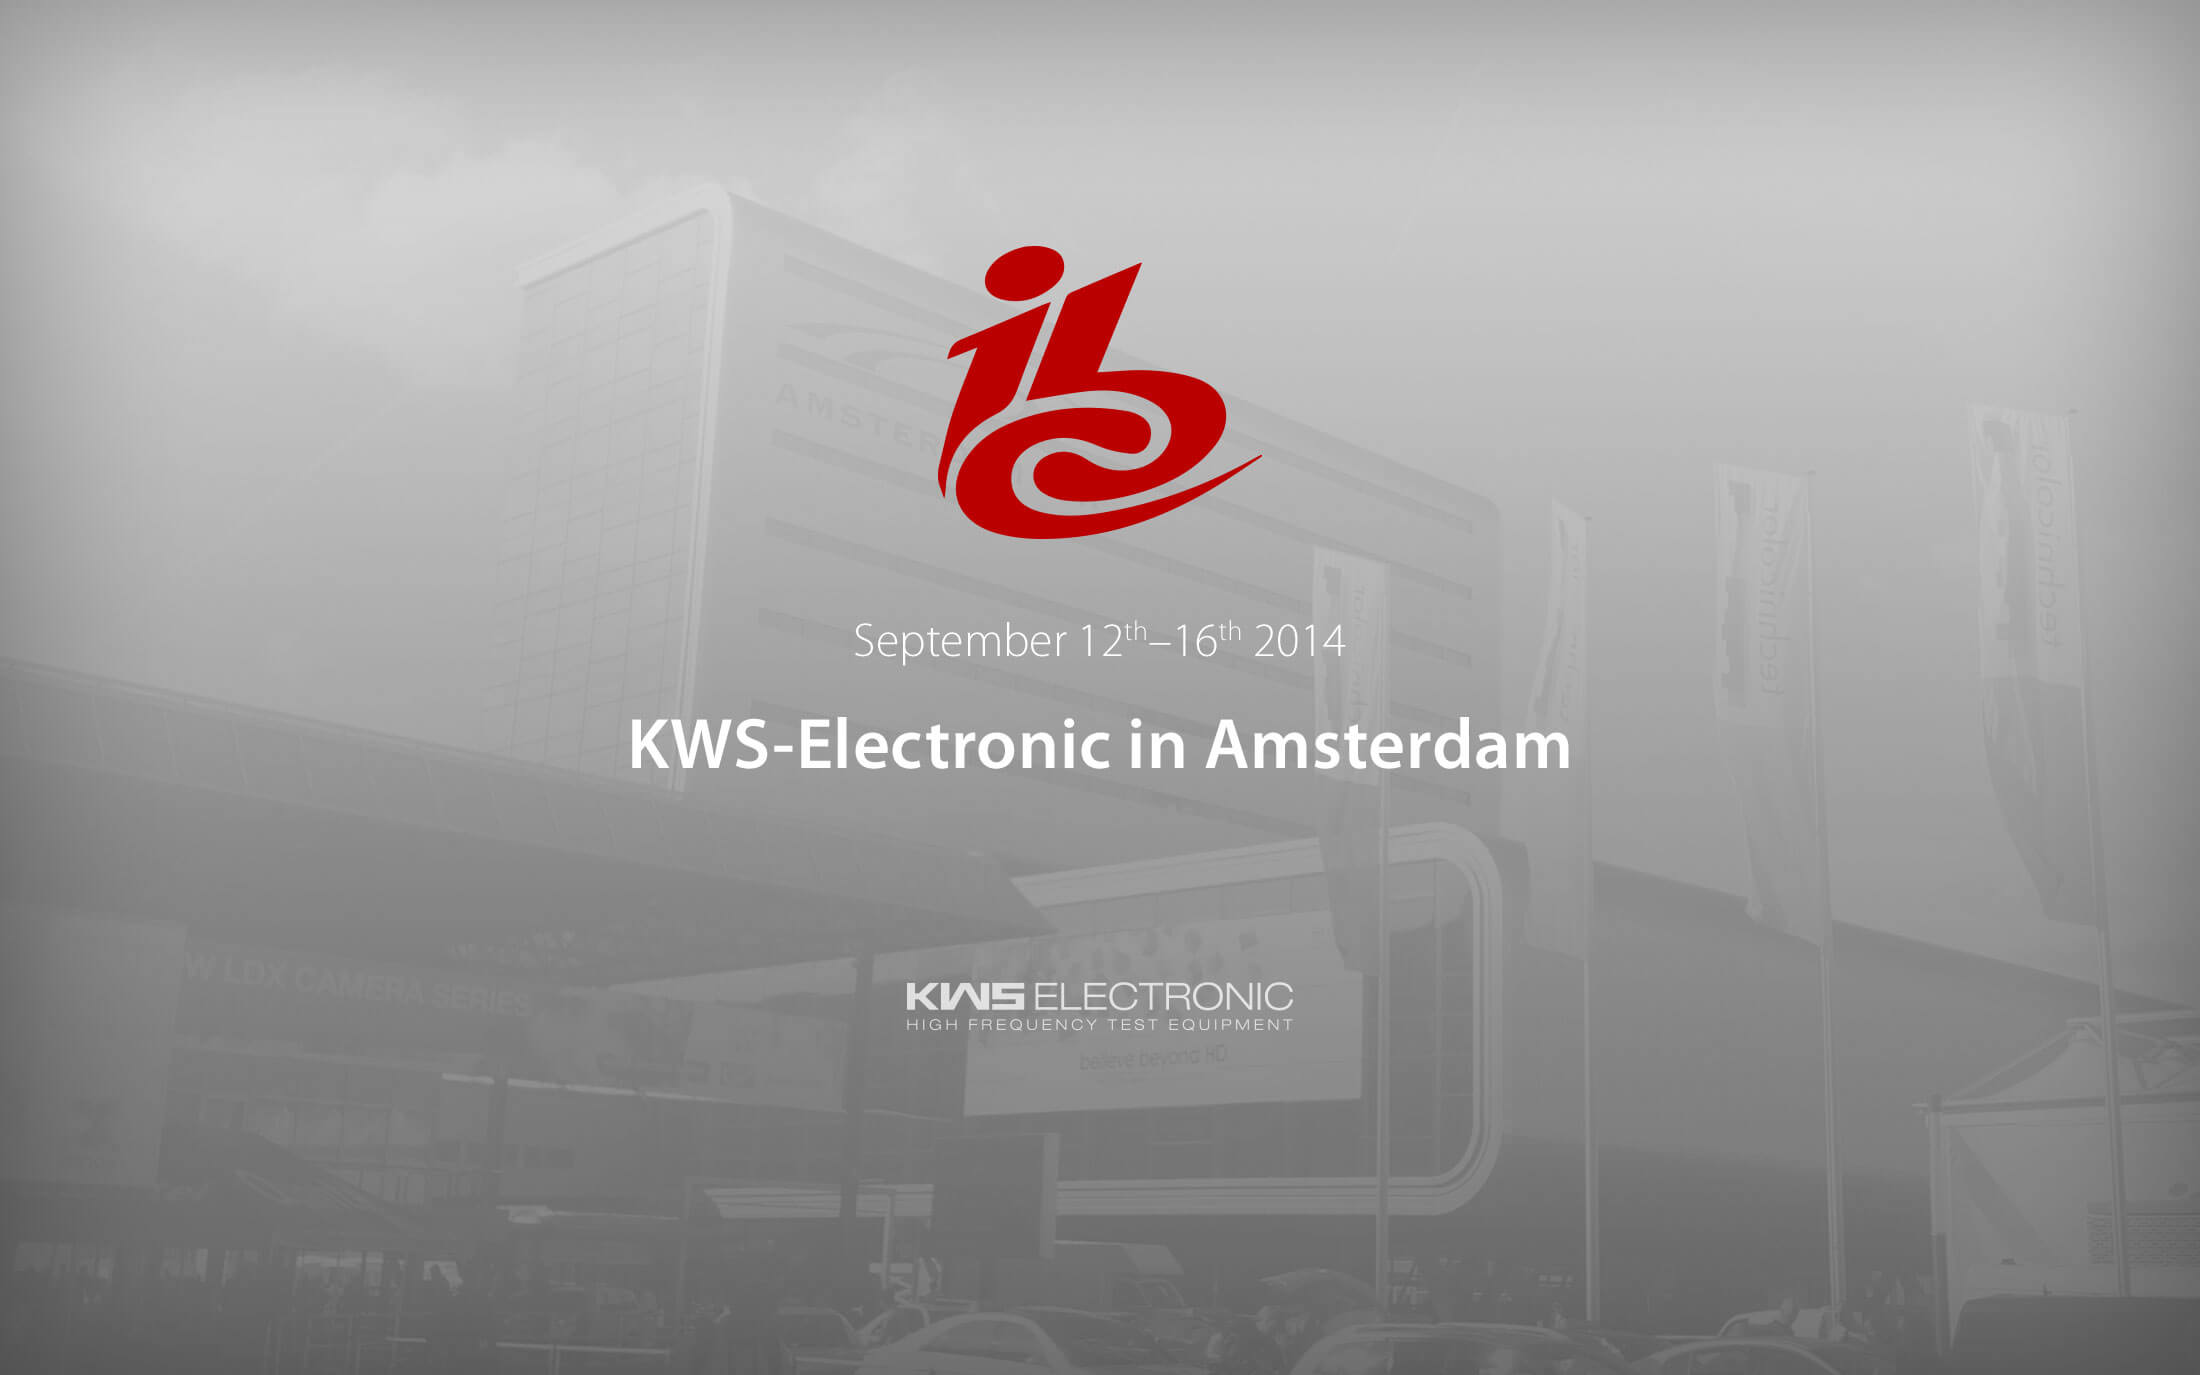 KWS-Electronic at Amsterdam at ibc 2014